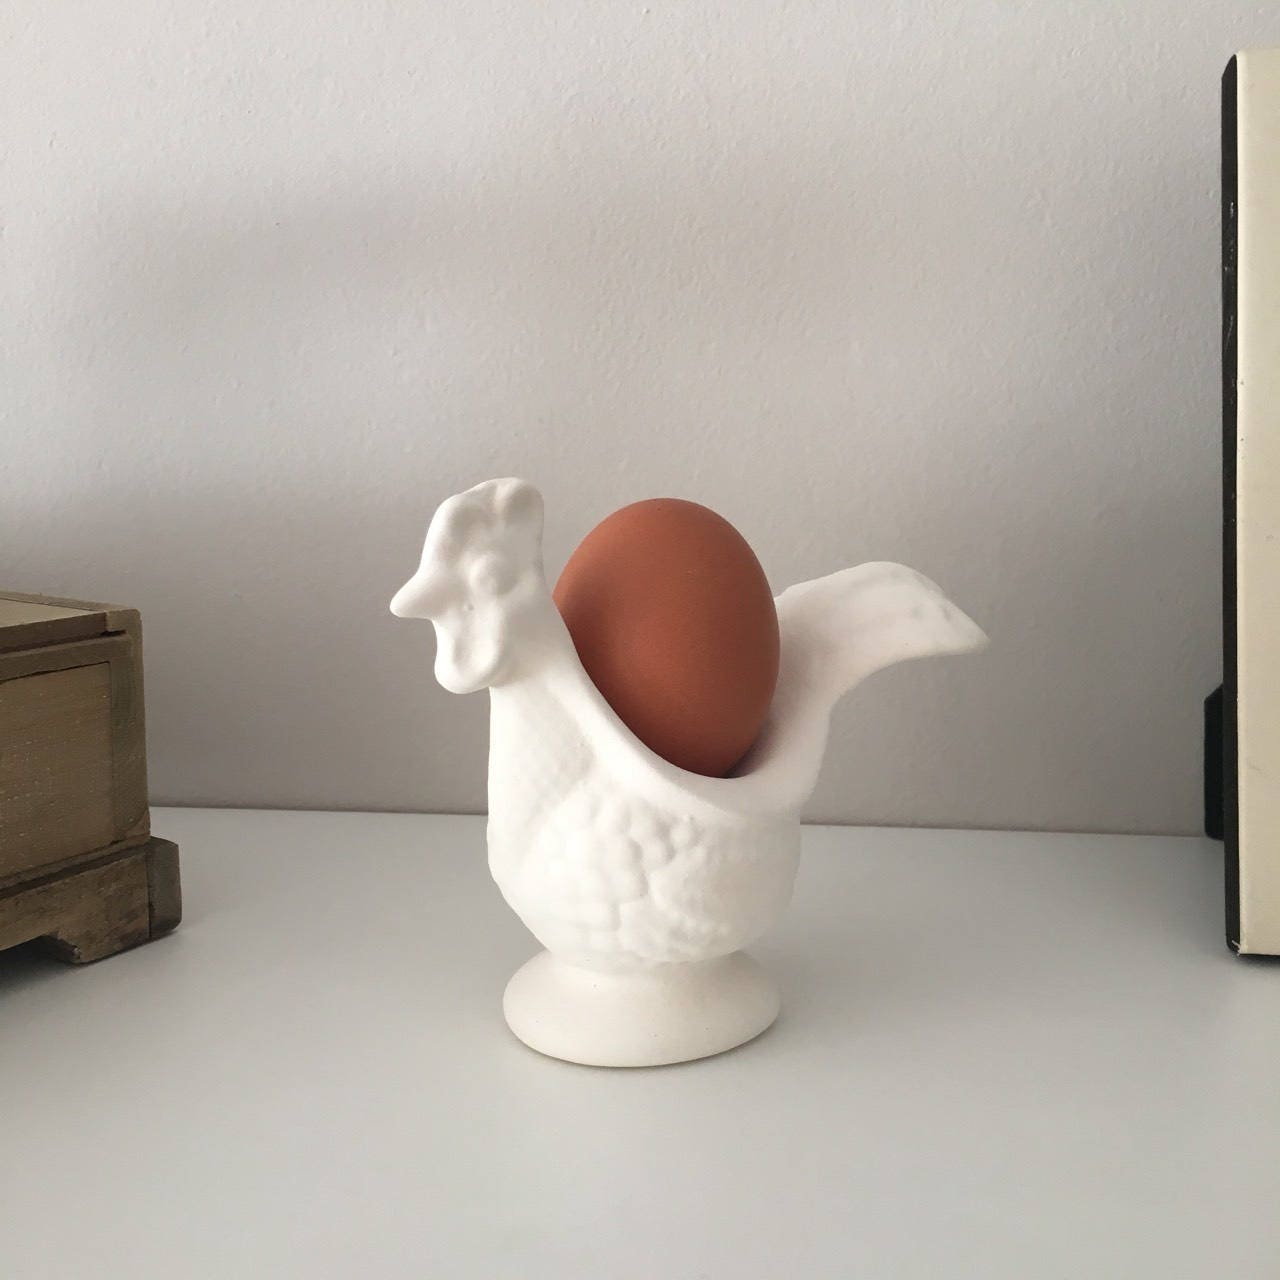 Cestino per uova in ceramica porta uova a forma di pollo porta uova Faderr per organizzare e visualizzare uova fresche motivo gallina bianco 